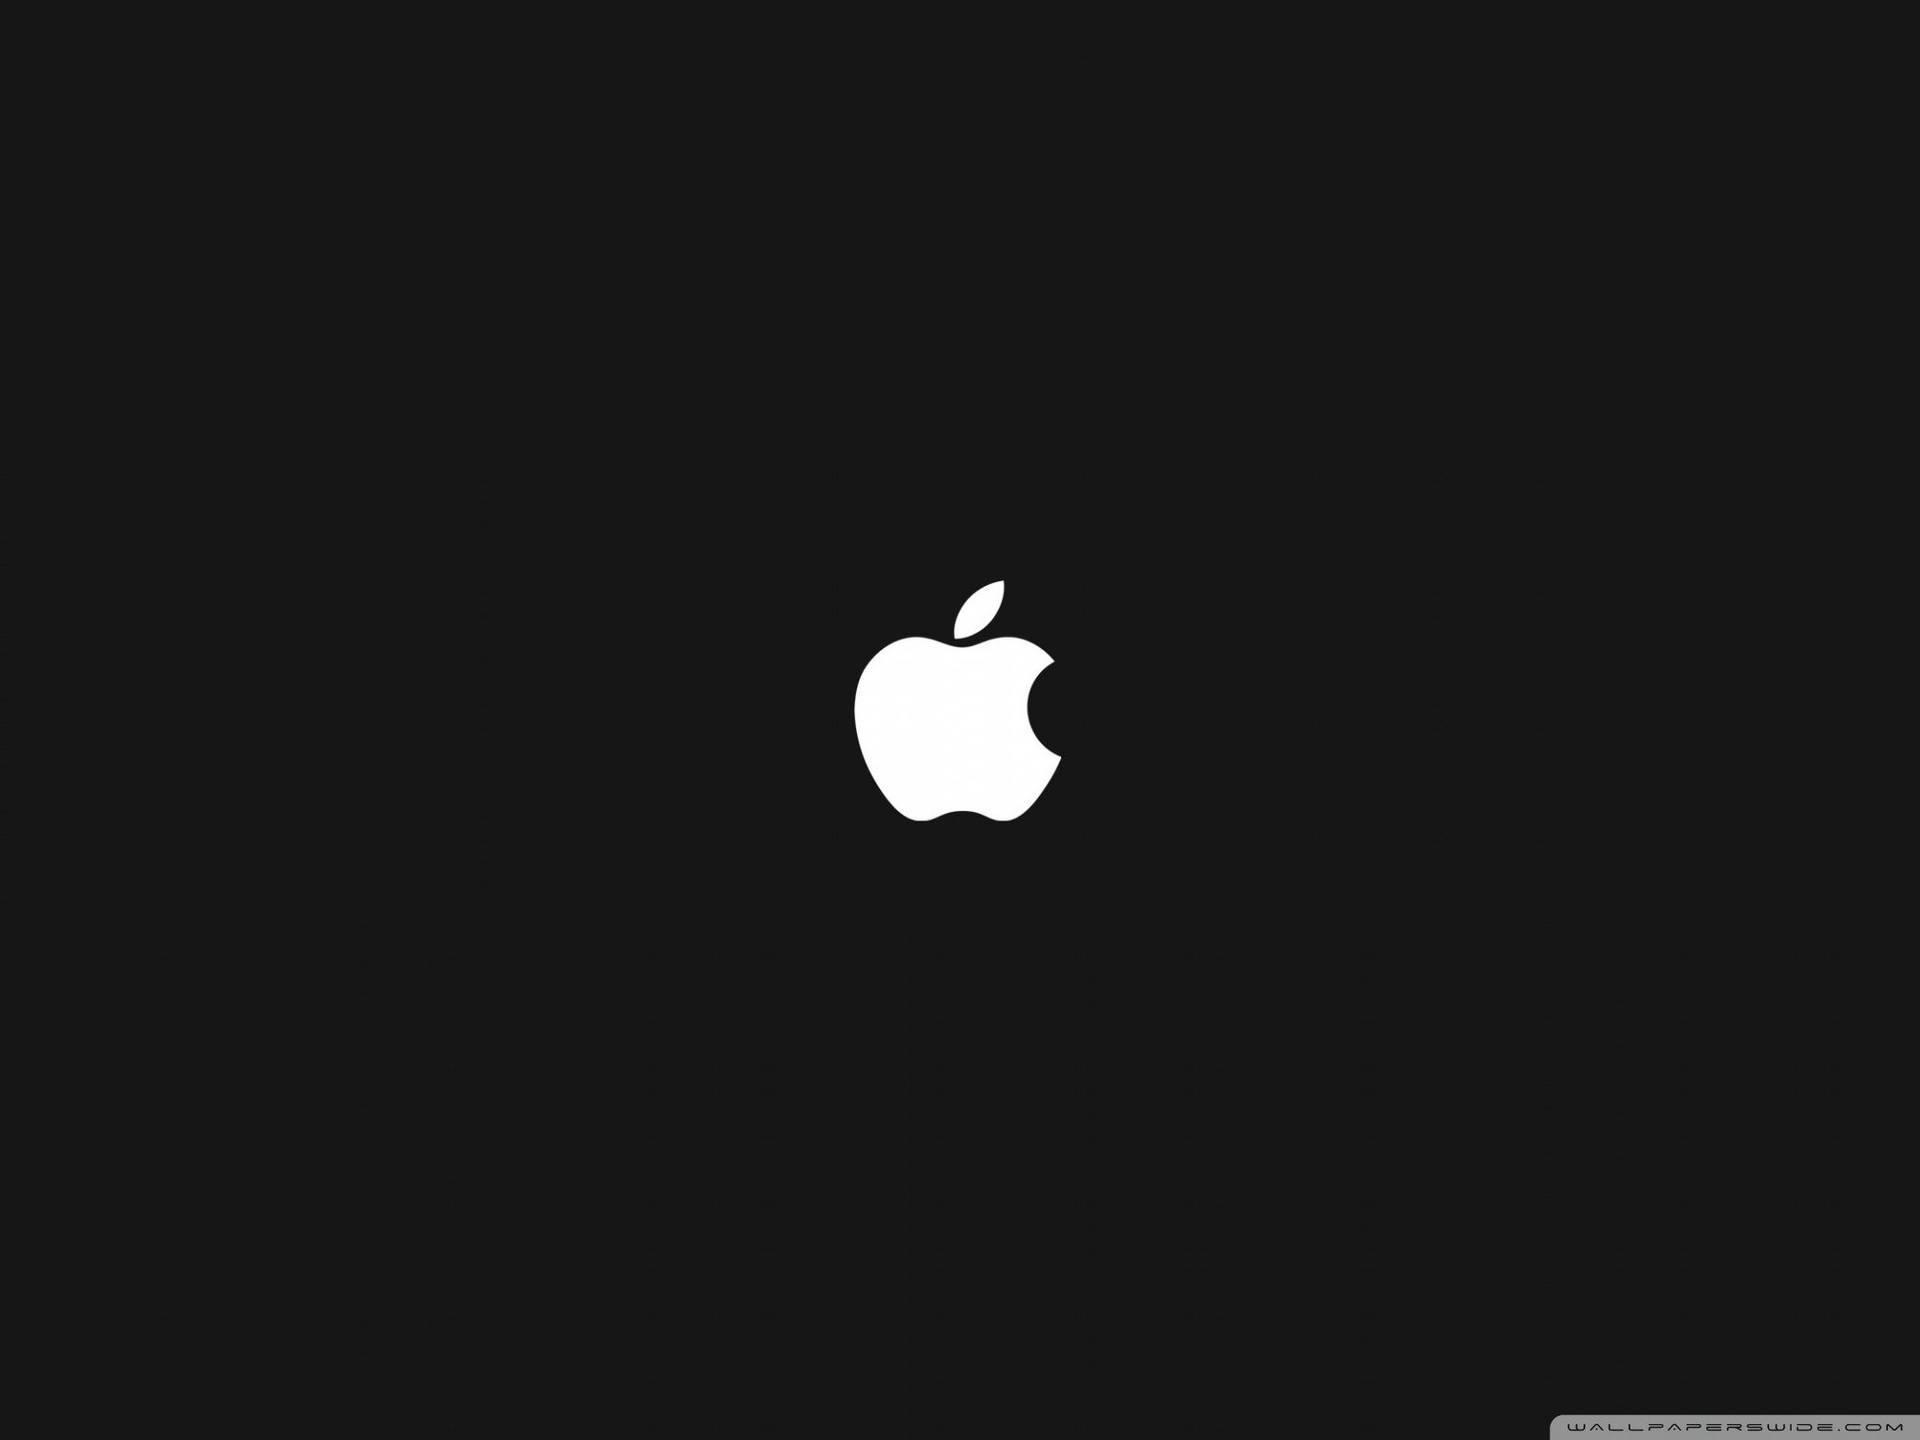 White Apple Logo On Black